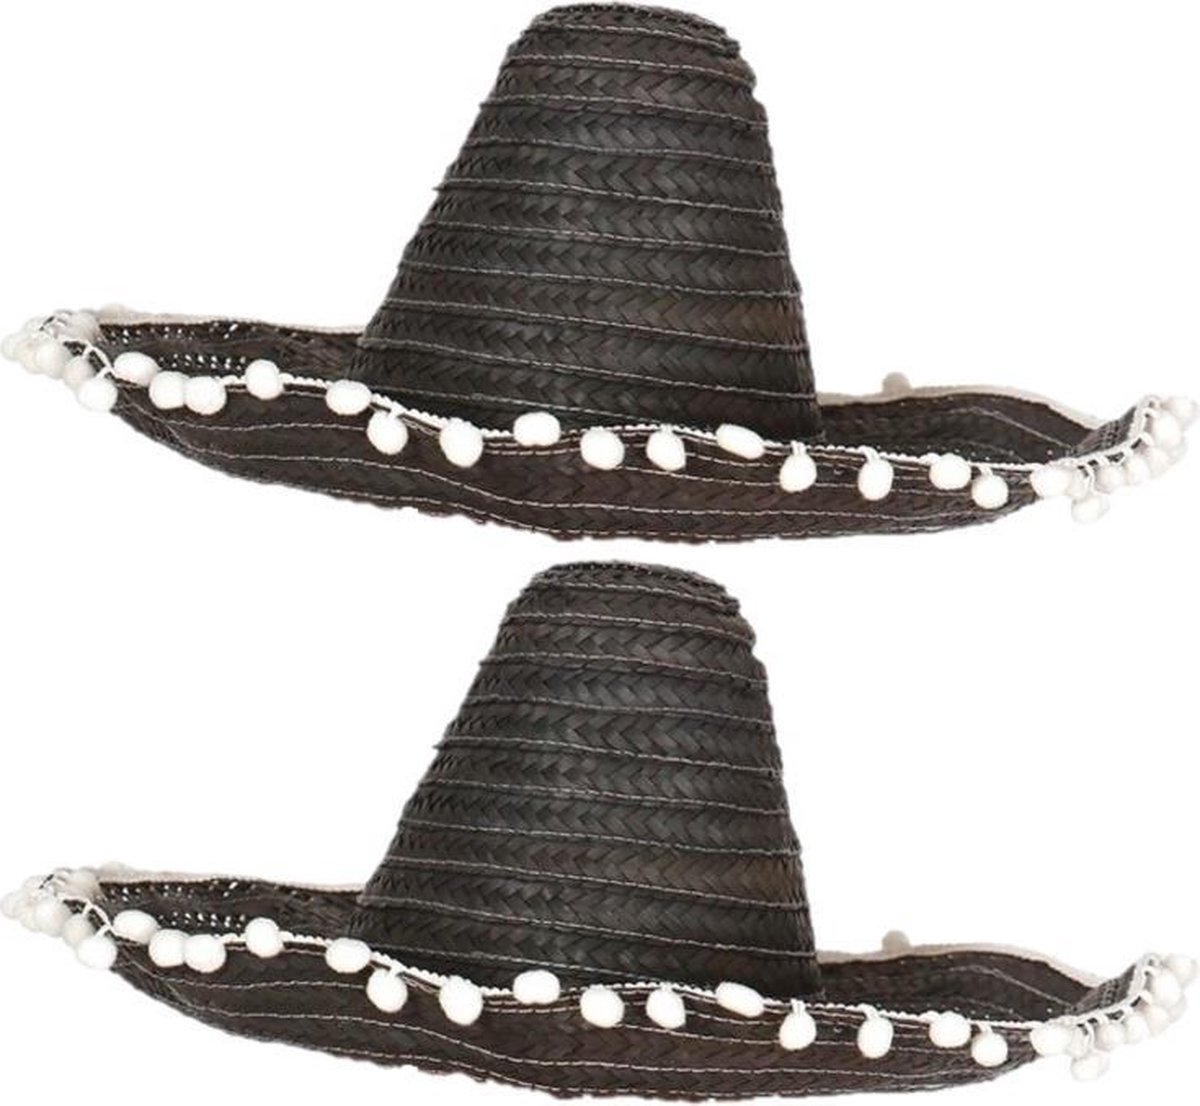 4x stuks zwarte sombrero/Mexicaanse hoed 45 cm - Mexico thema verkleedkleding voor volwassenen